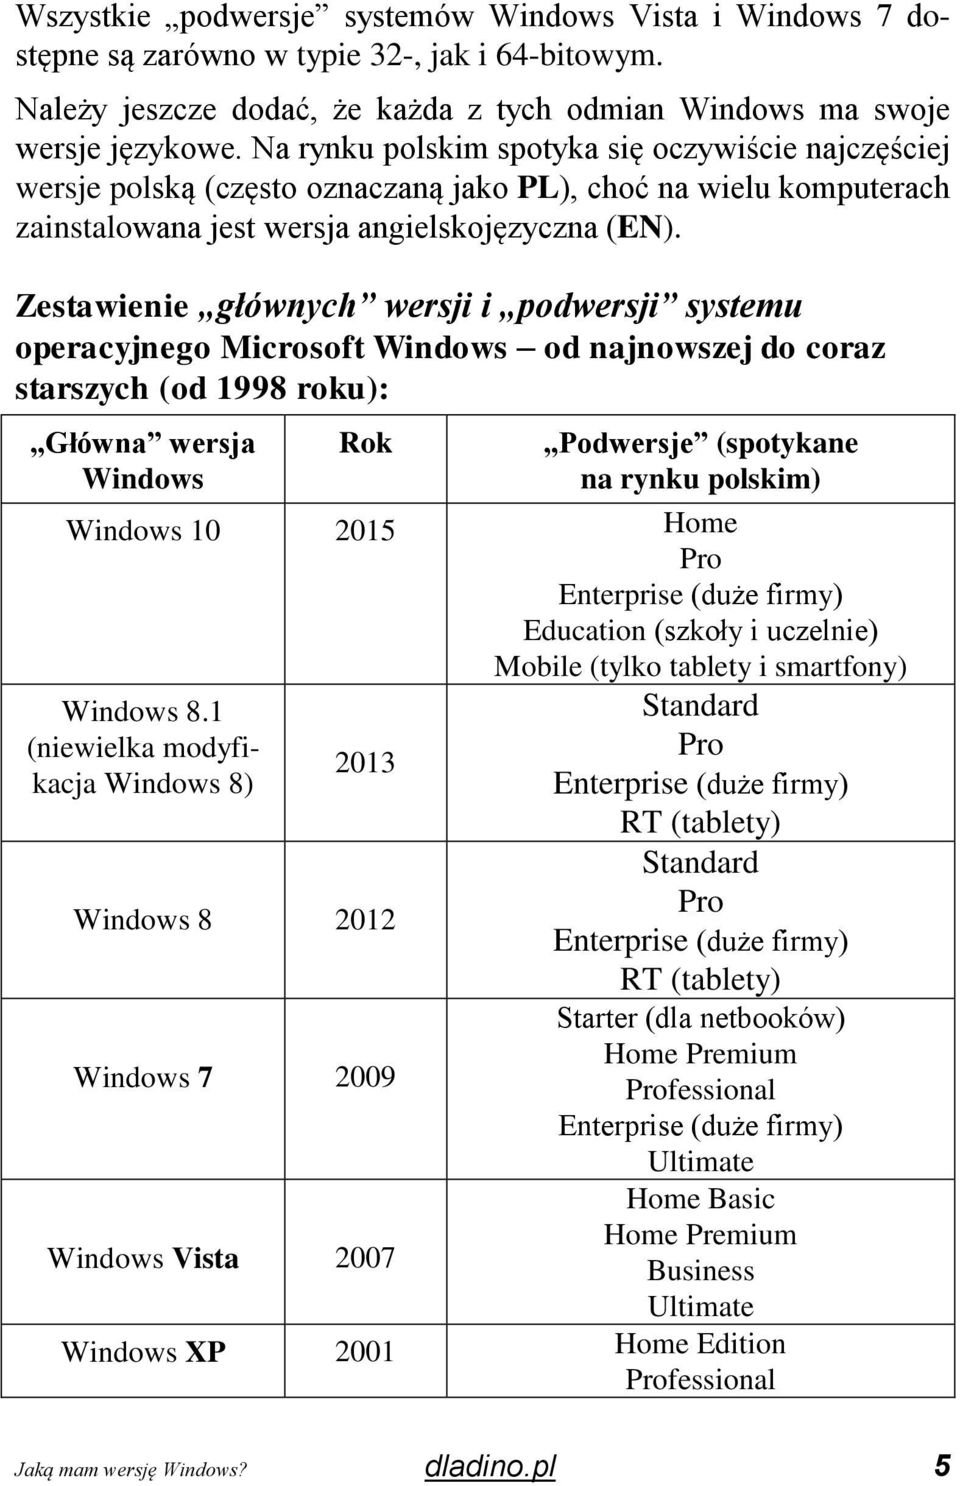 Zestawienie głównych wersji i podwersji systemu operacyjnego Microsoft Windows od najnowszej do coraz starszych (od 1998 roku): Główna wersja Windows Rok Podwersje (spotykane na rynku polskim)